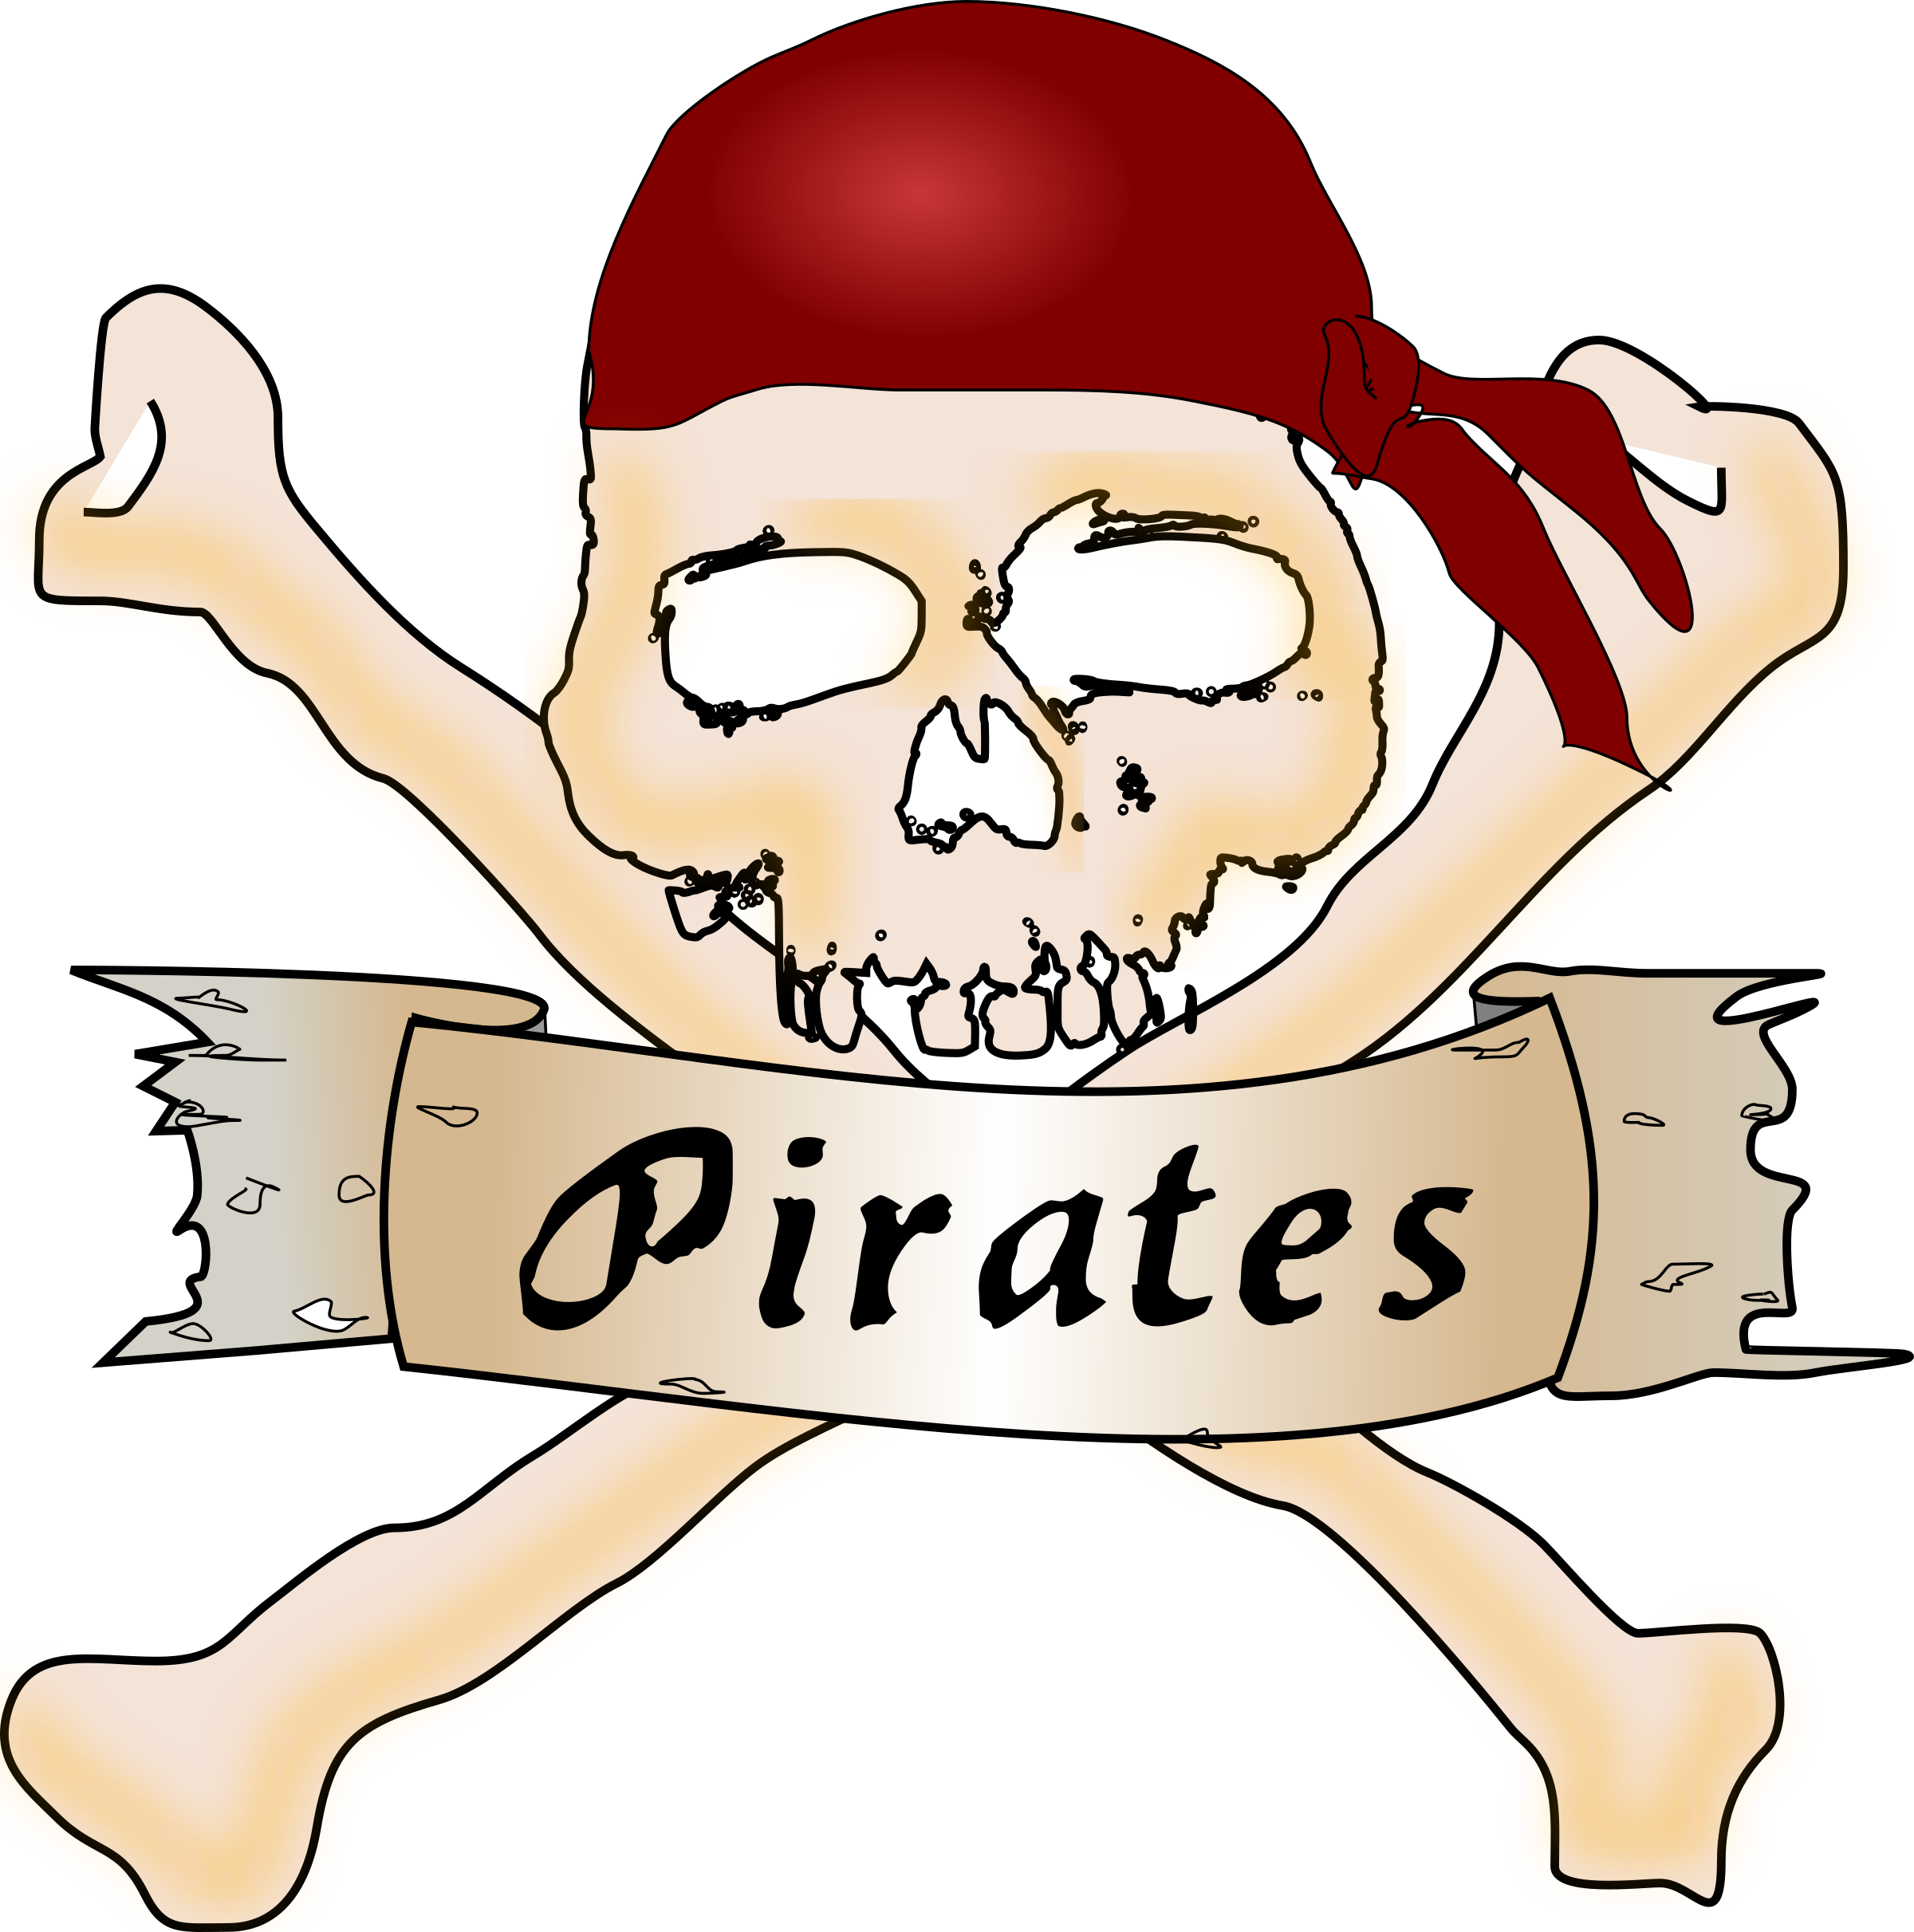 Pirate scar